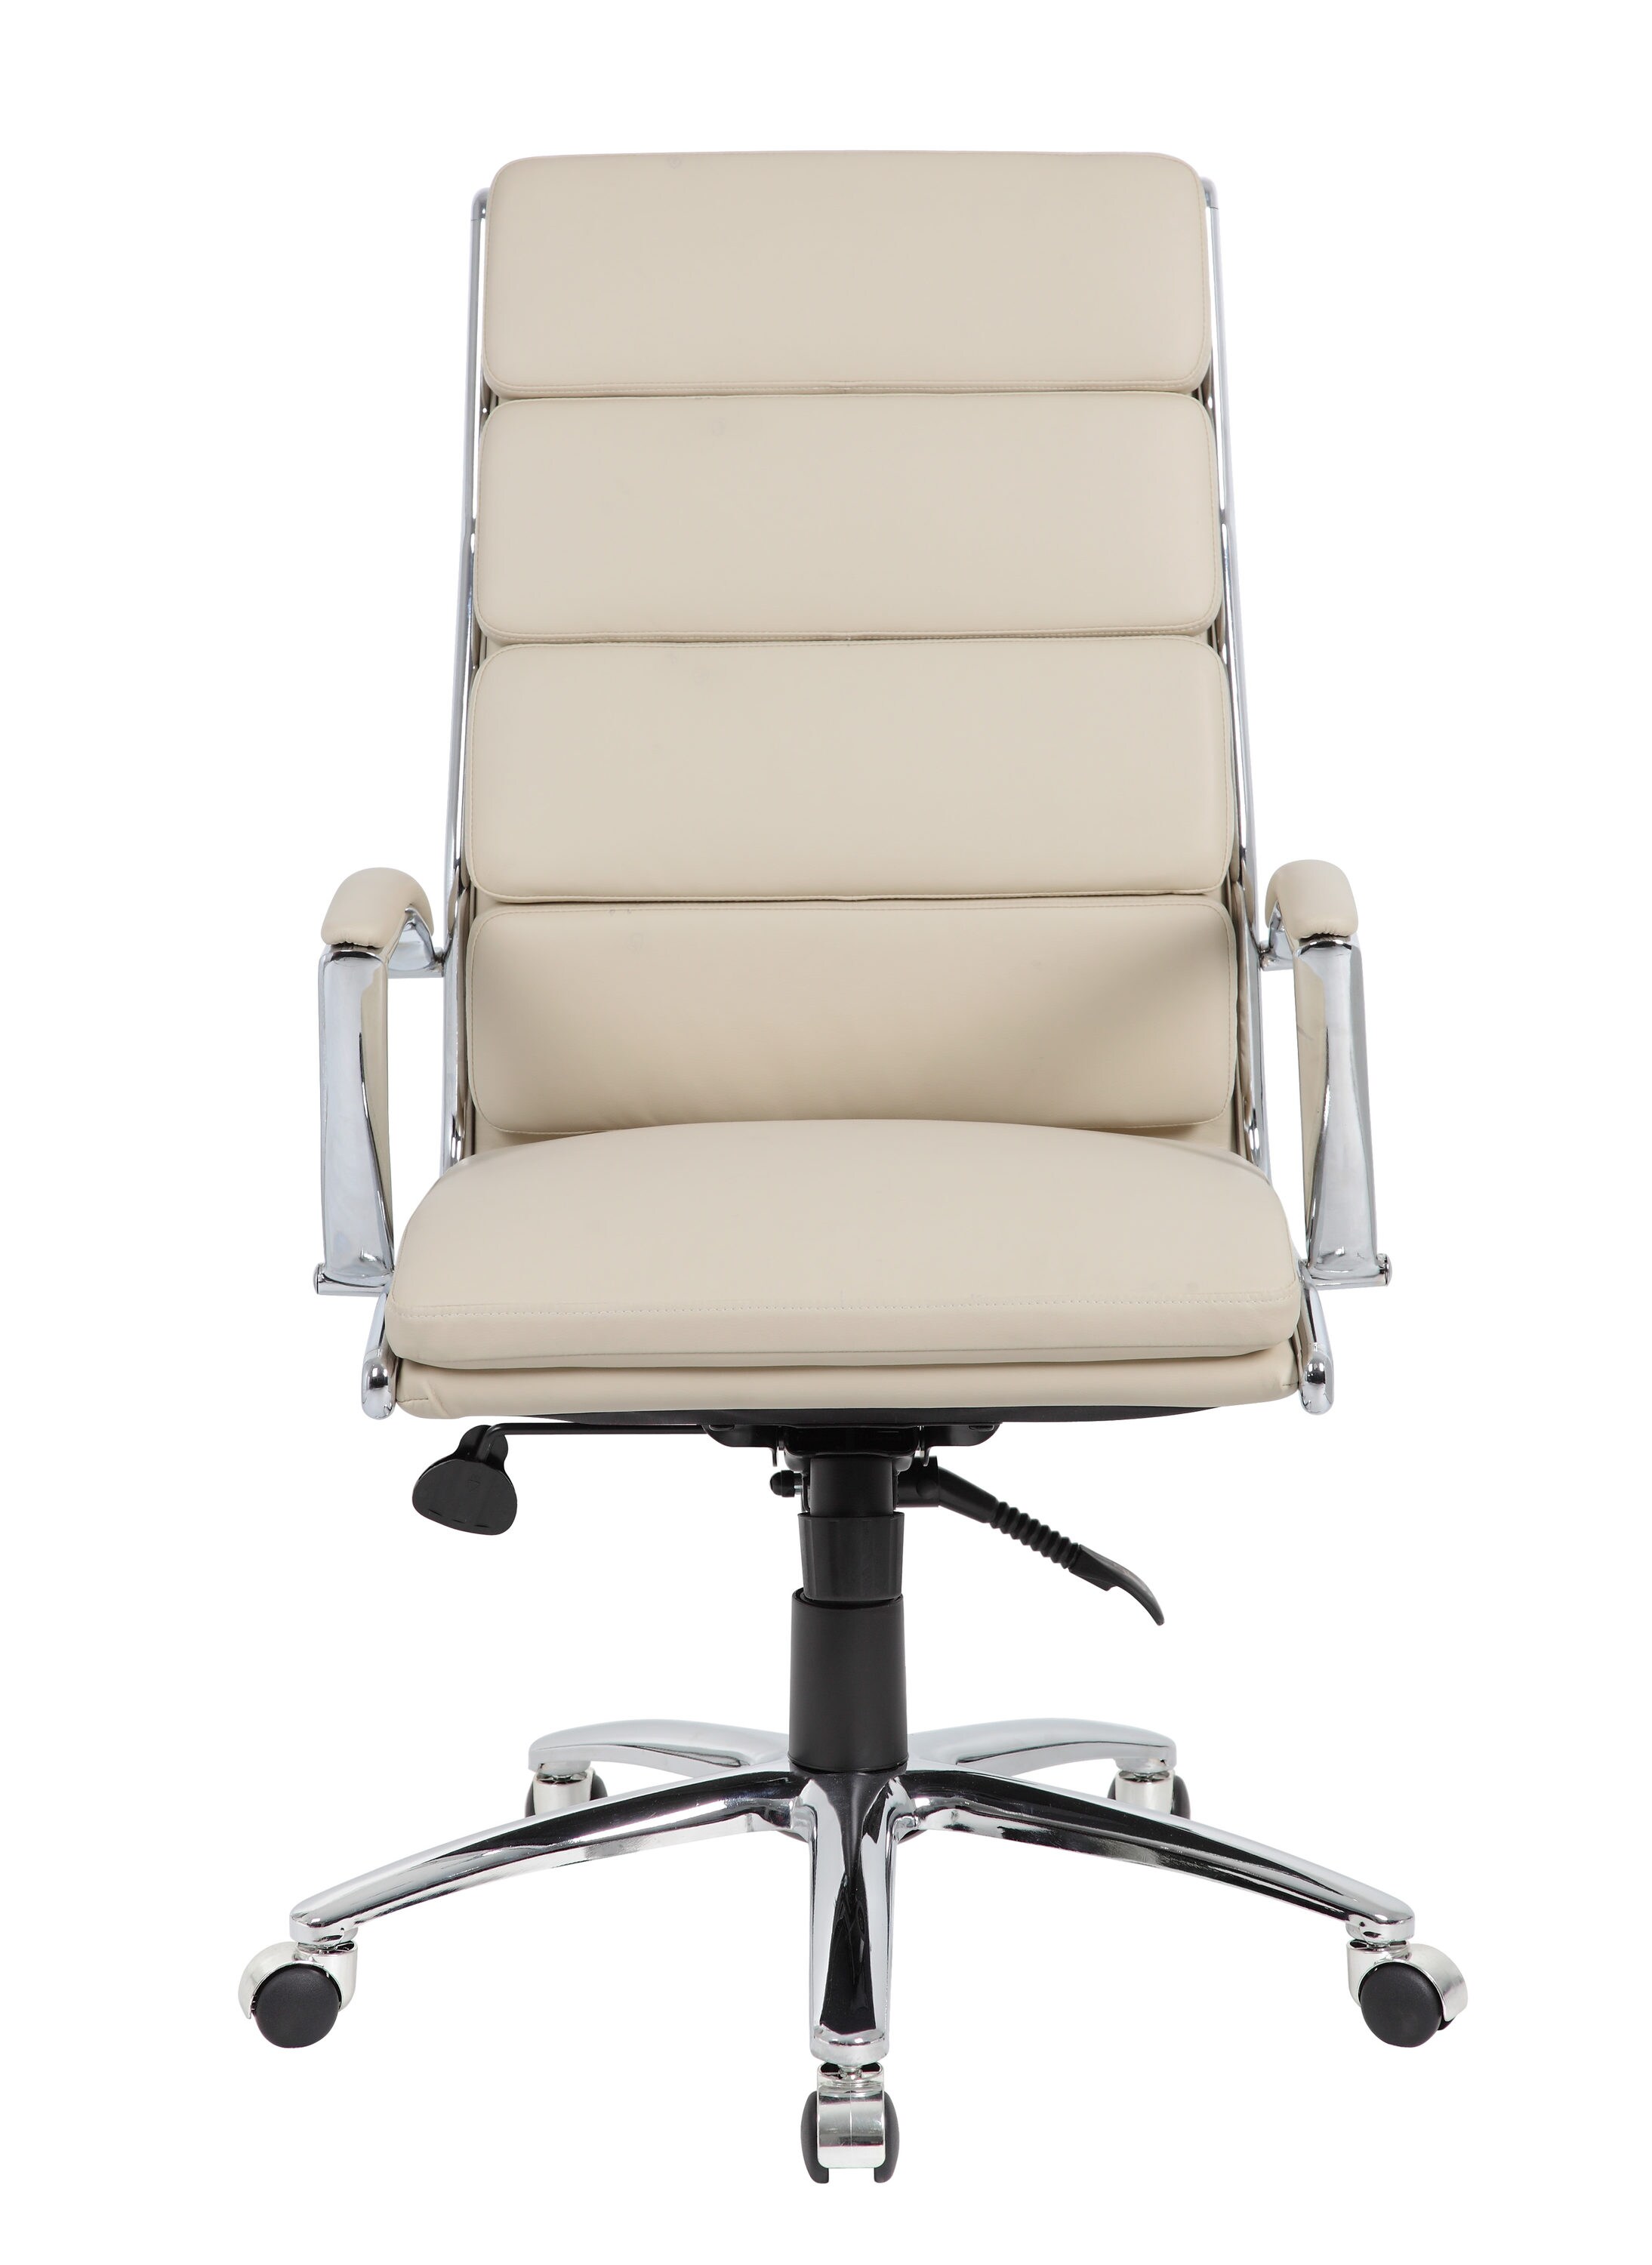 Modern Office Chair, 47% Off